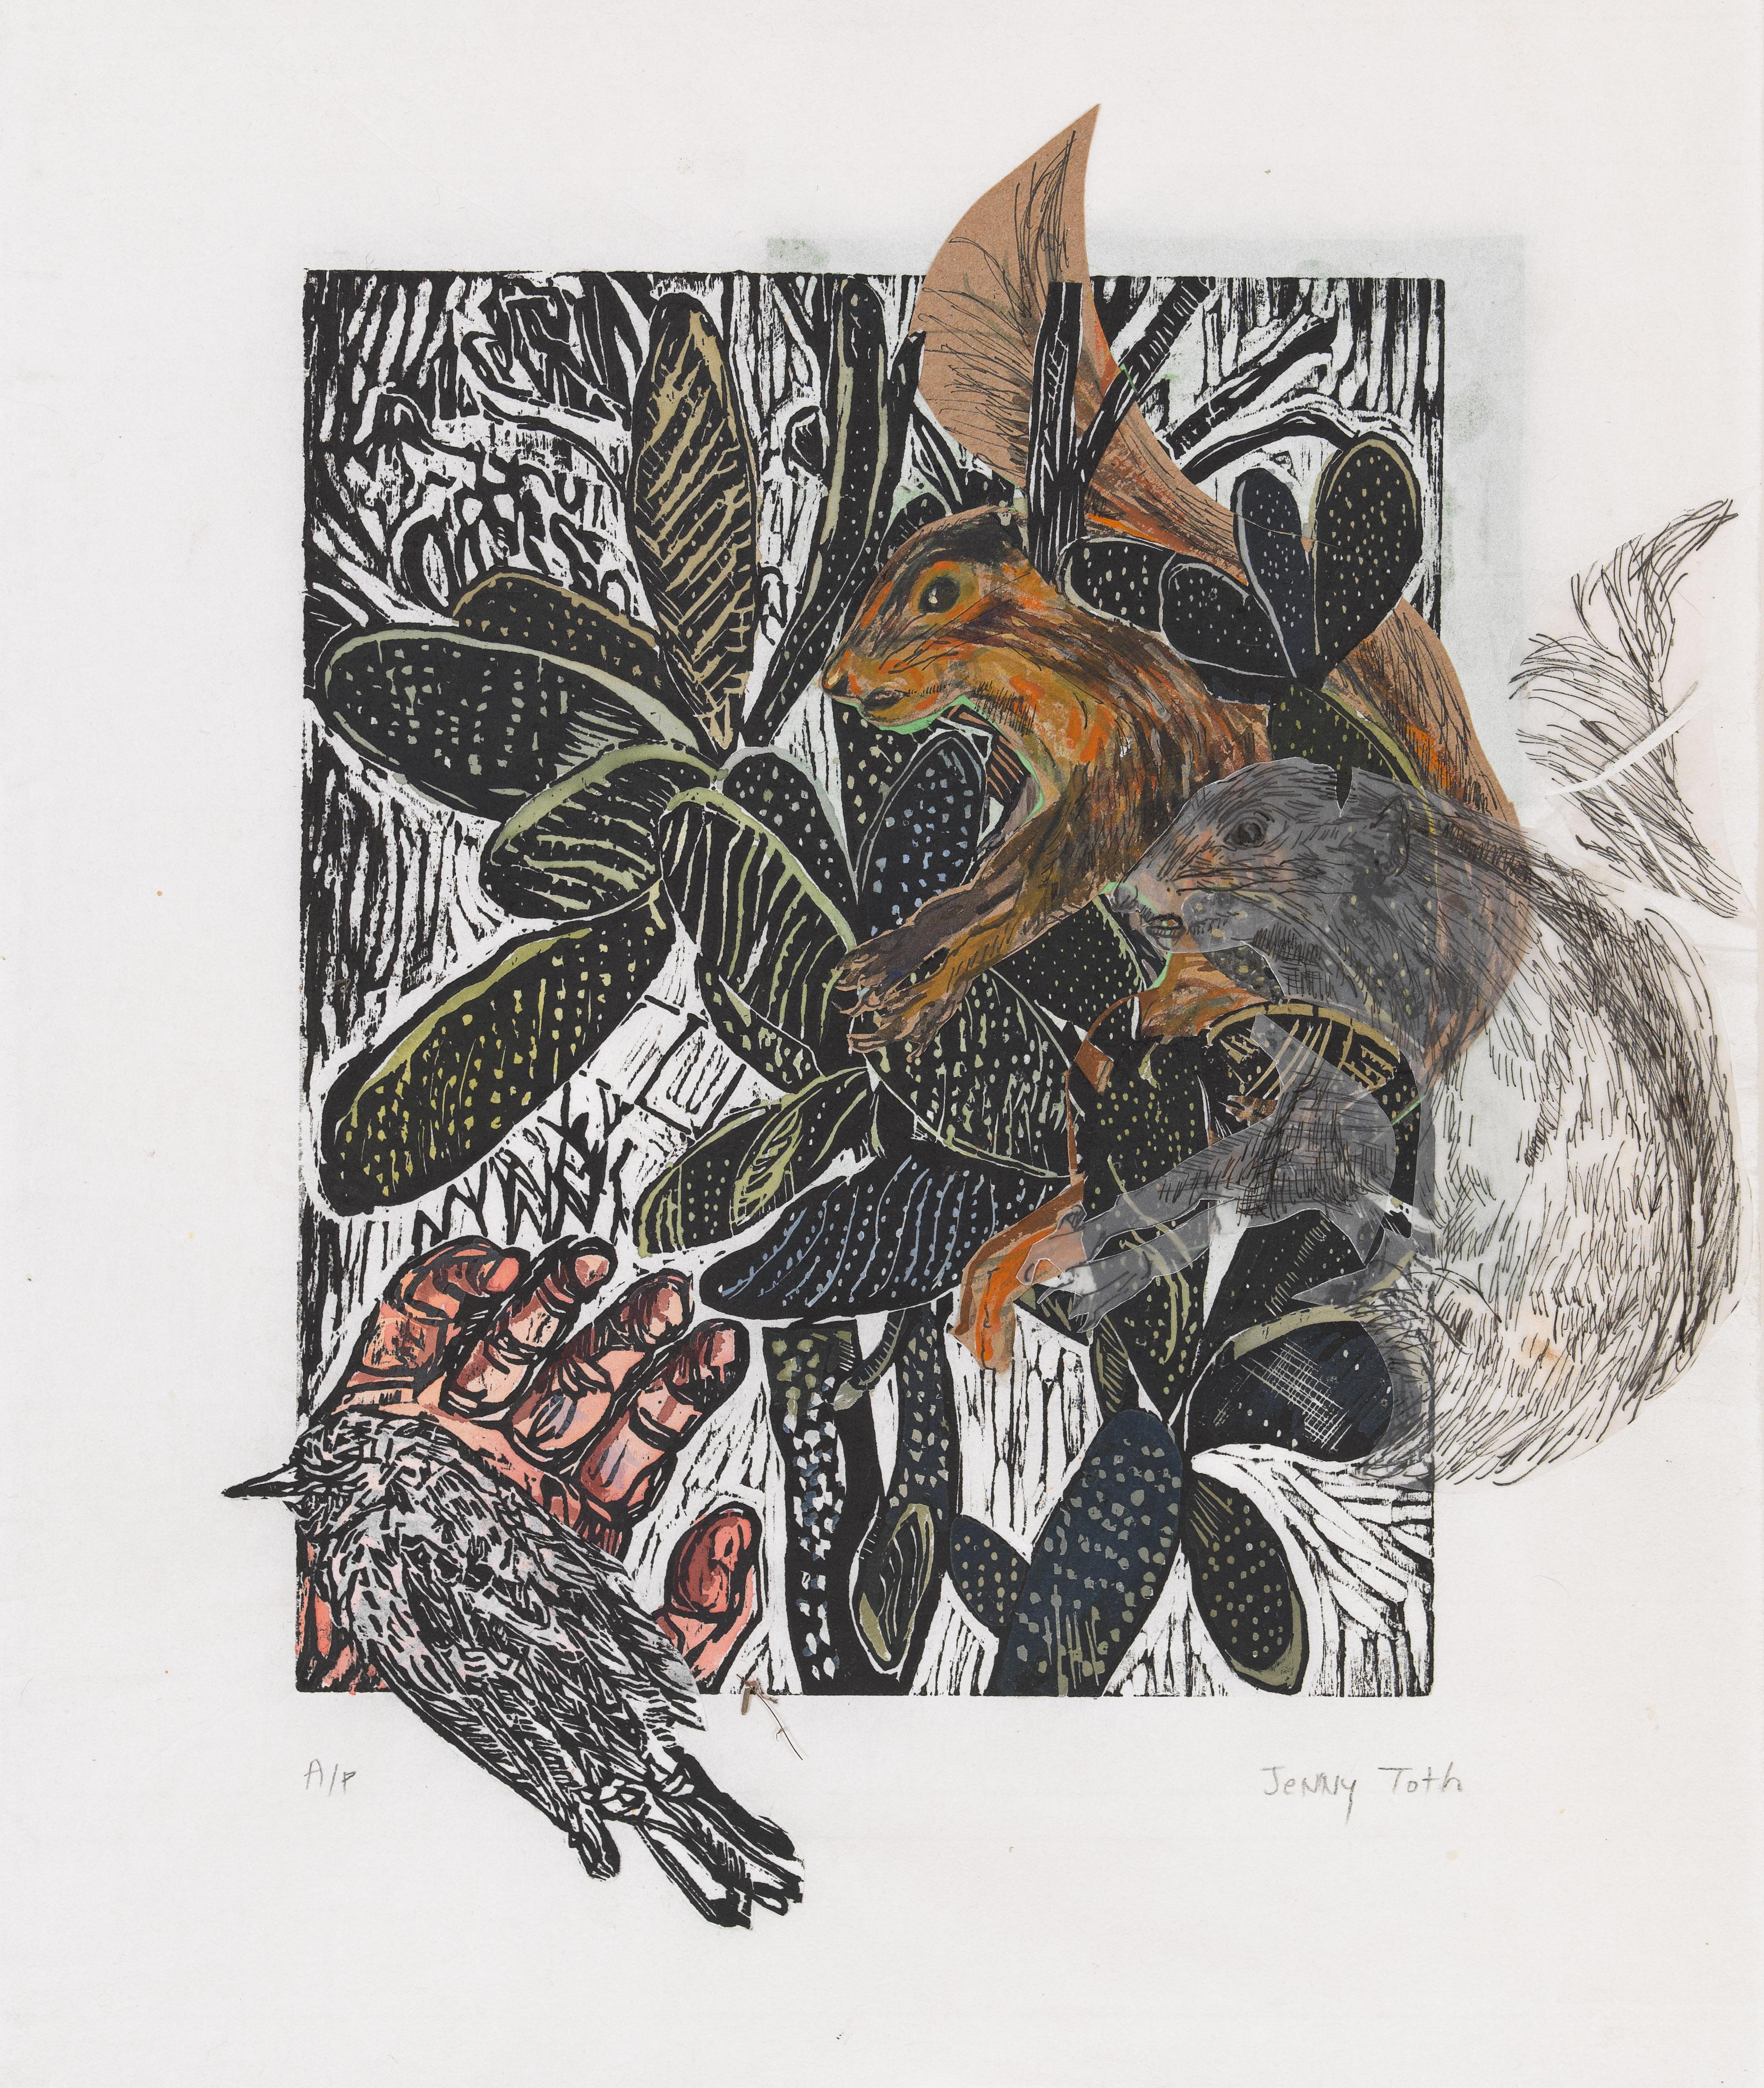 Der Vogel in der Hand ist mehr wert als zwei Eichhörnchen im Kaktus, Tiere – Mixed Media Art von Jenny Toth